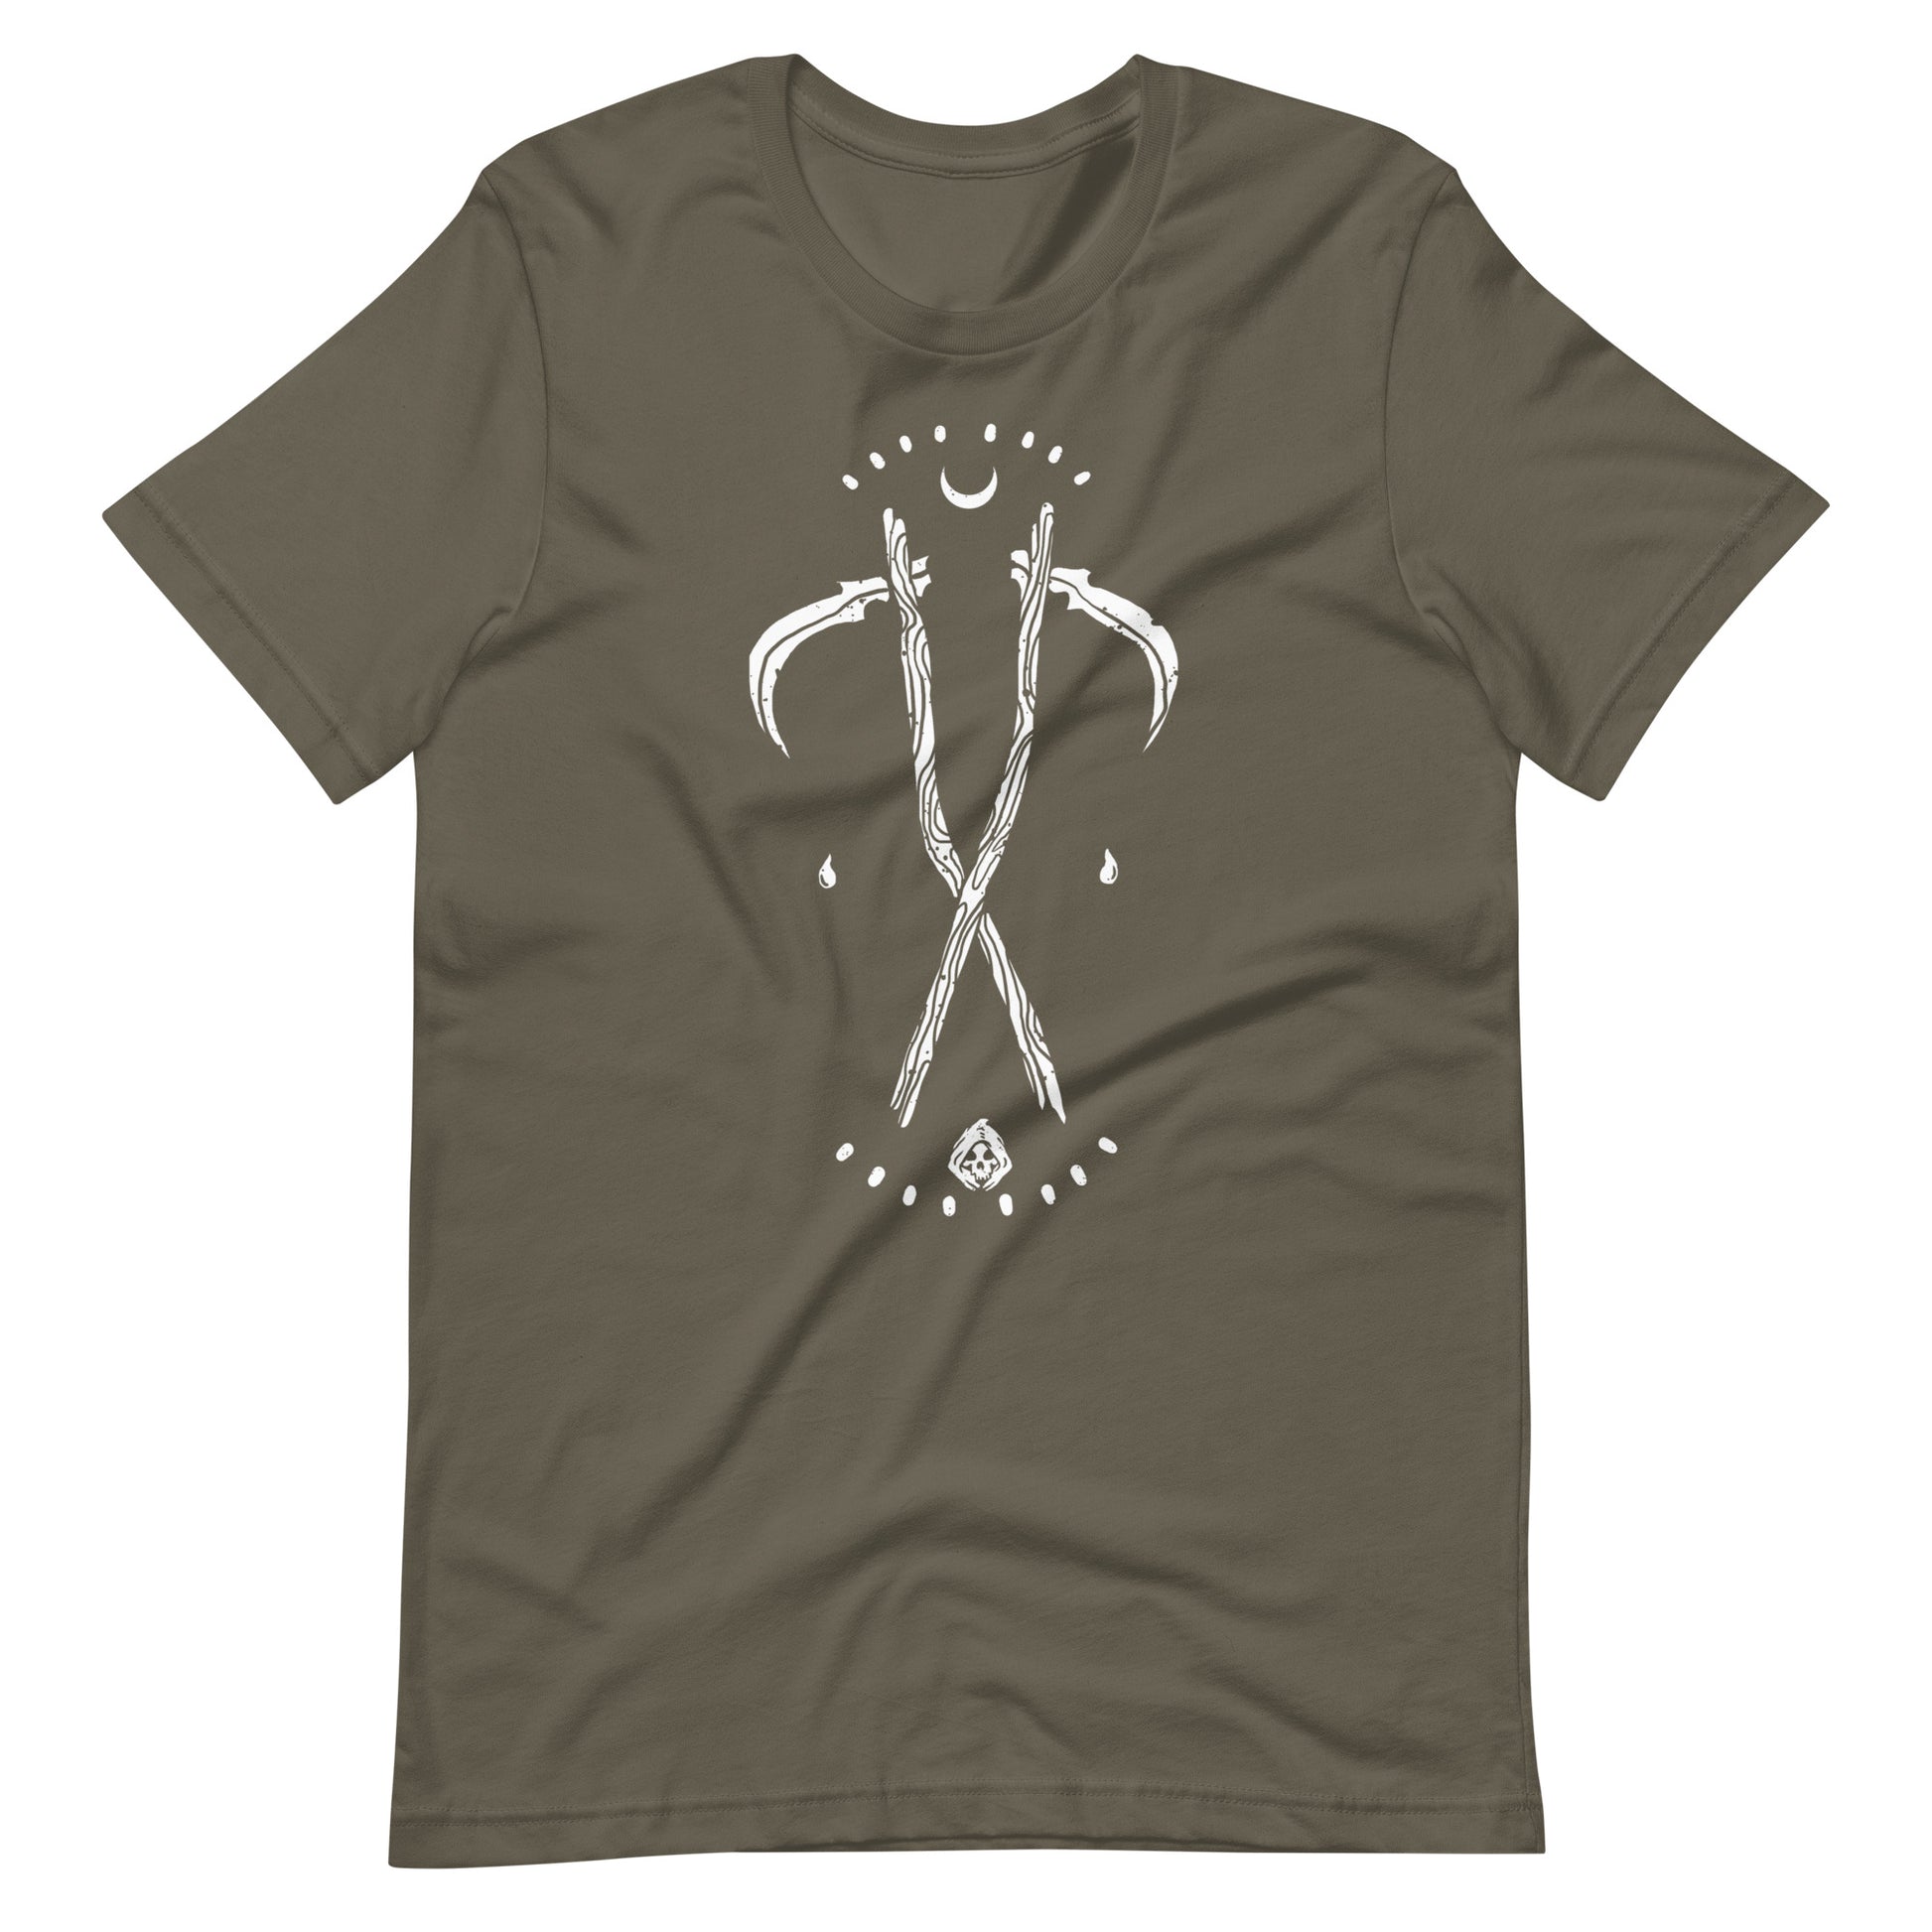 Grim - Men's t-shirt - Army Front